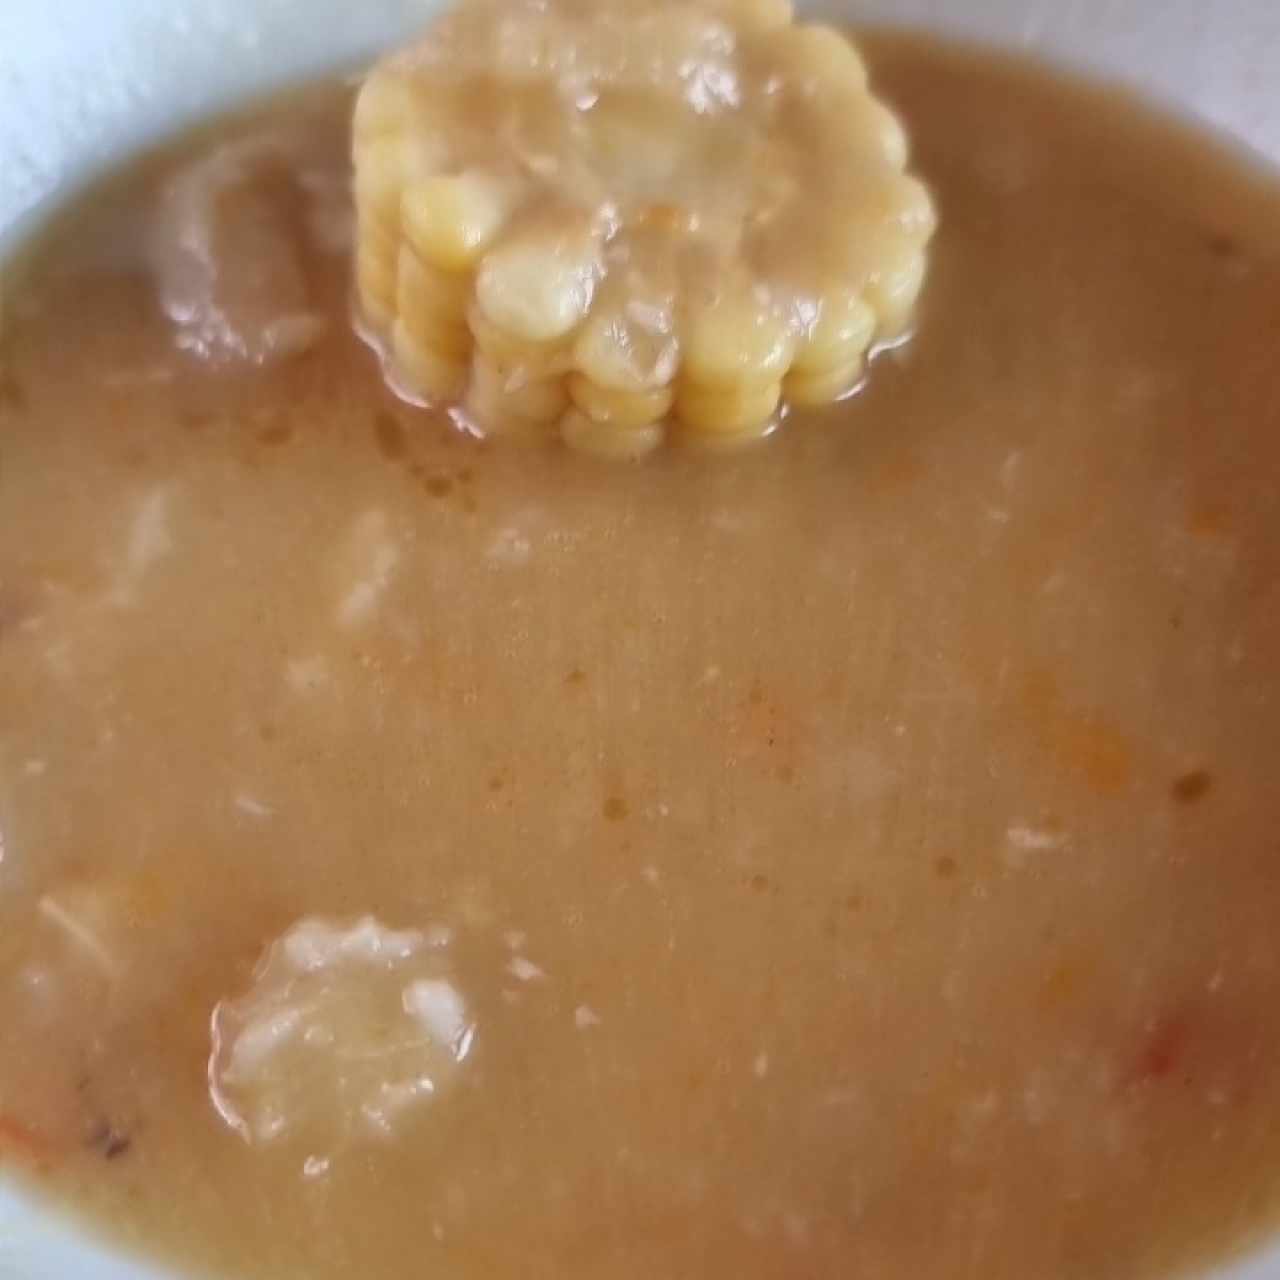 sopa de pata